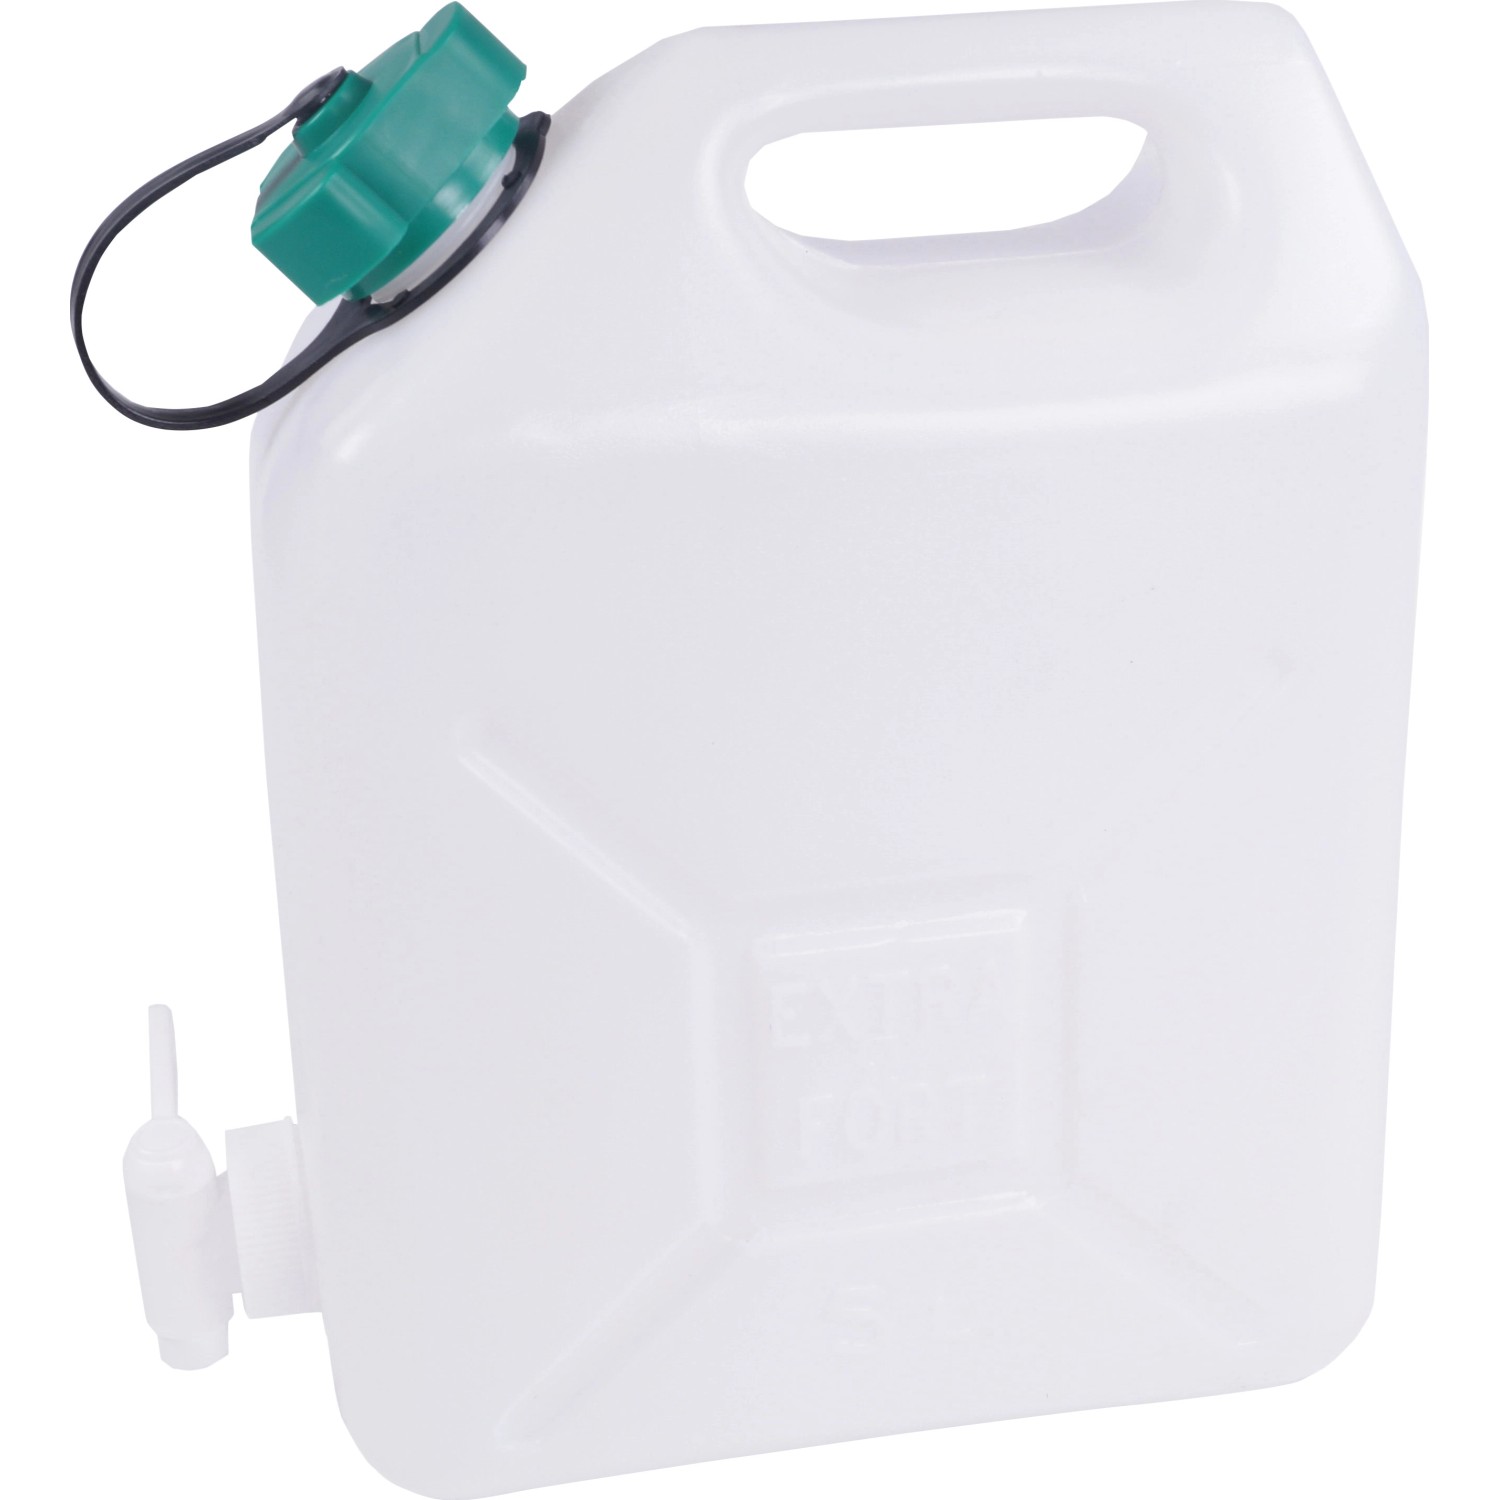 Wasserkanister Kunststoff 20 l mit Tragegriff & Auslaufhahn kaufen